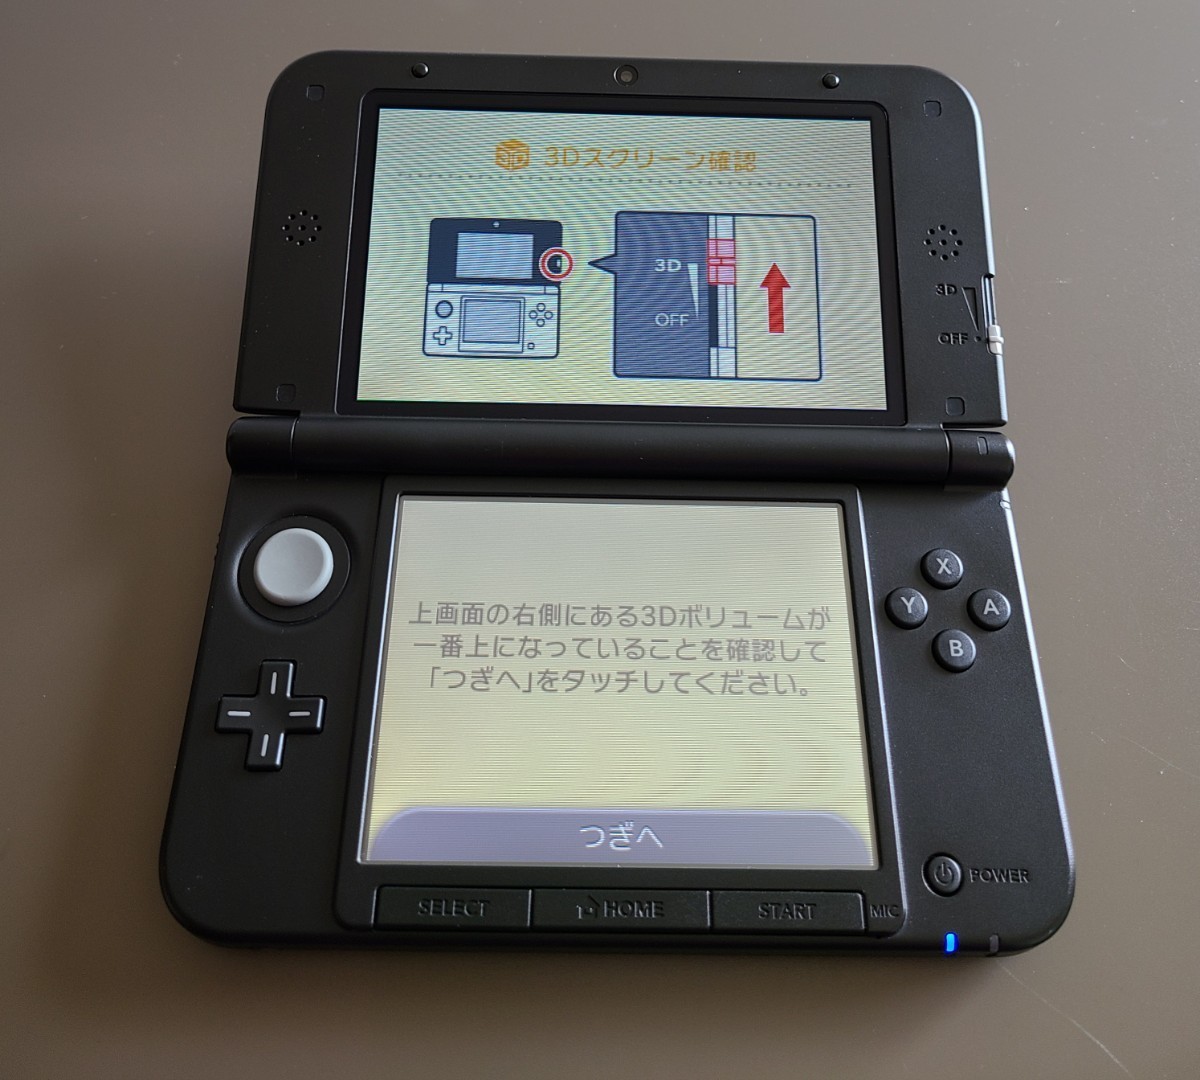 ニンテンドー3DS LL ブラック 3DSLL 任天堂 Nintendo 黒 BLACK 任天堂